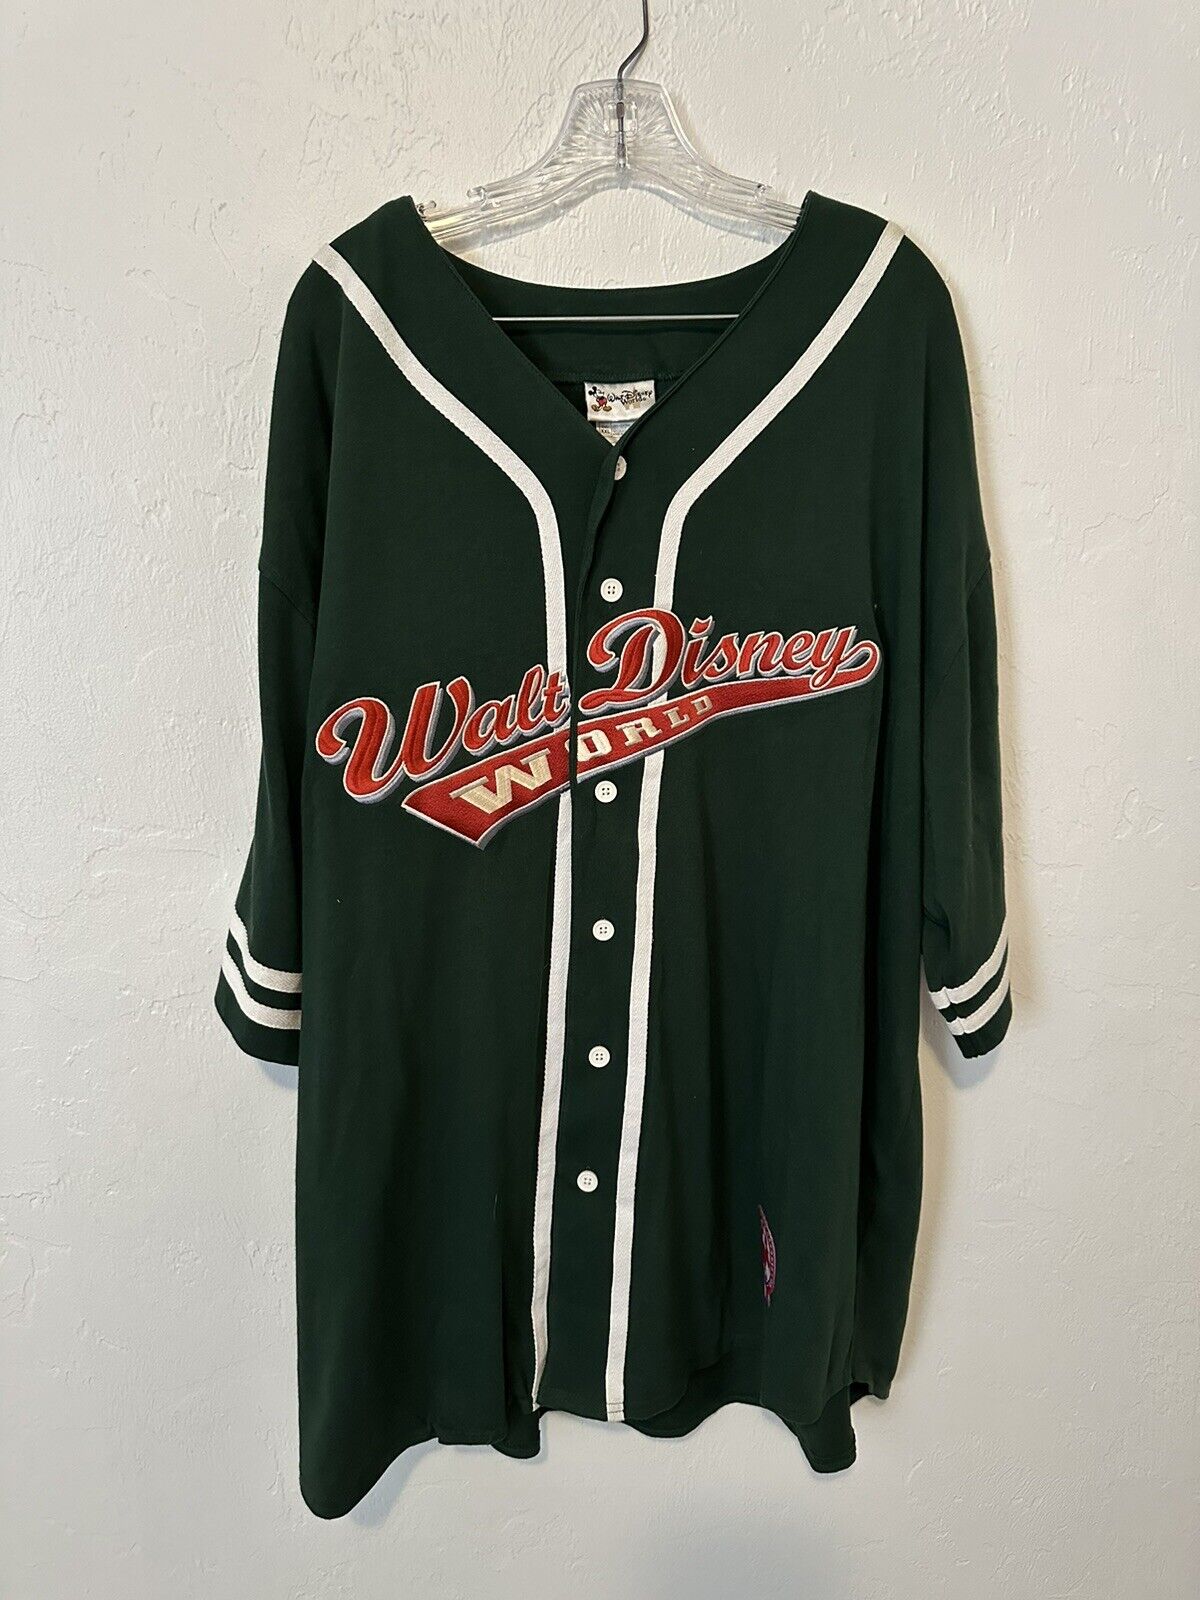 NWT Vintage Walt Disney Cotton Green Baseball Jersey Shirt Adult Size XXL